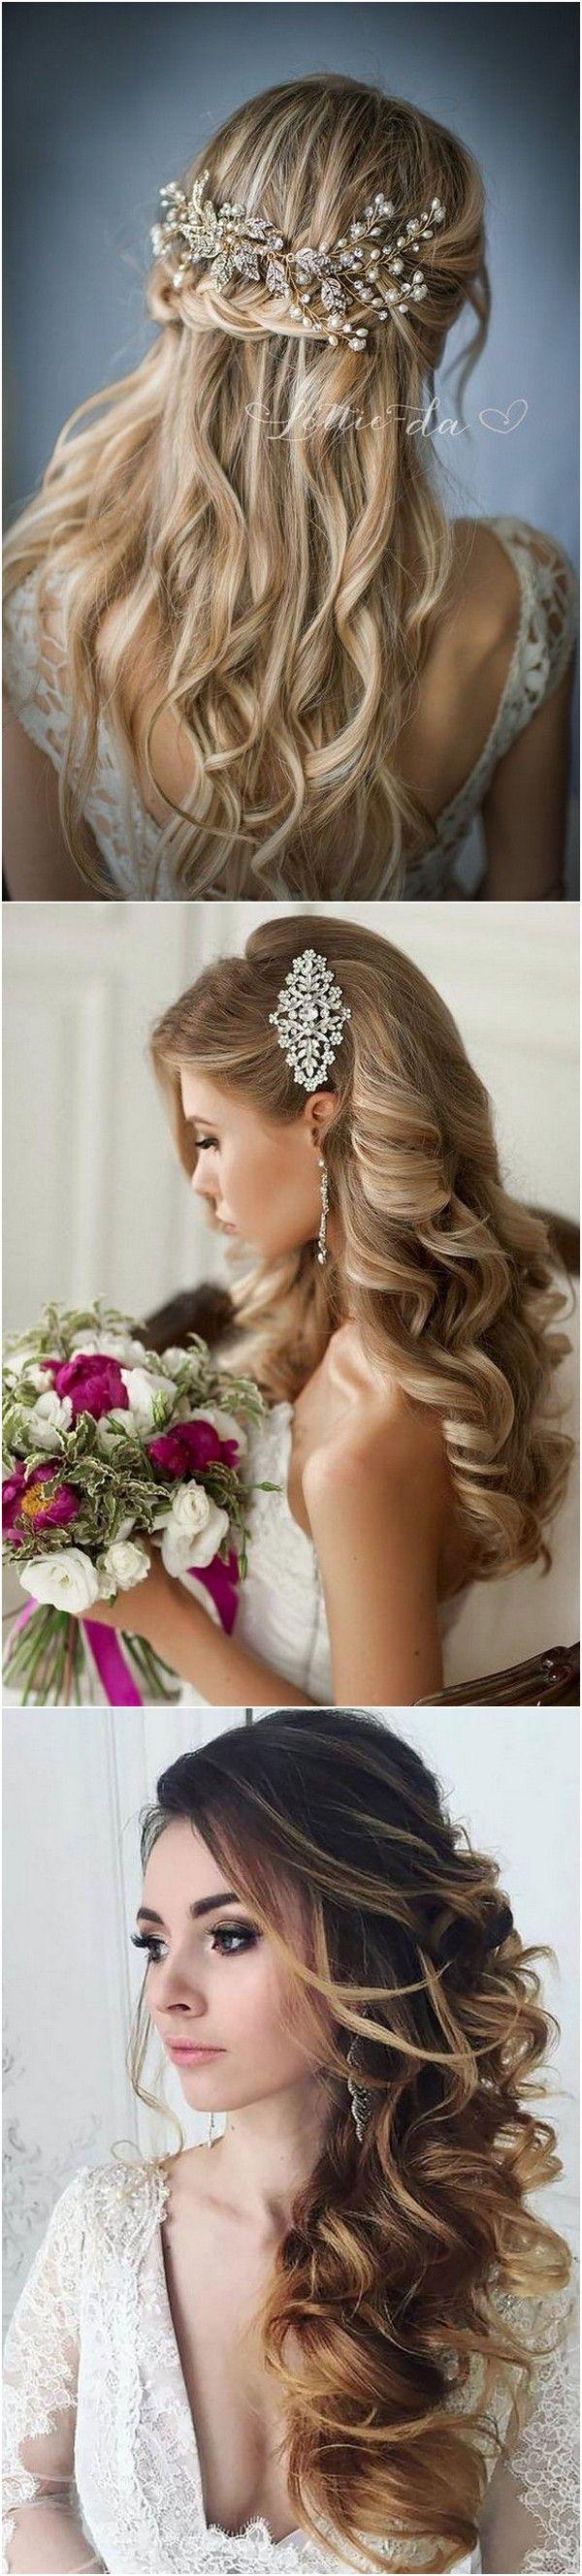 زفاف - Top 20 Vintage Wedding Hairstyles For Brides - Page 3 Of 3